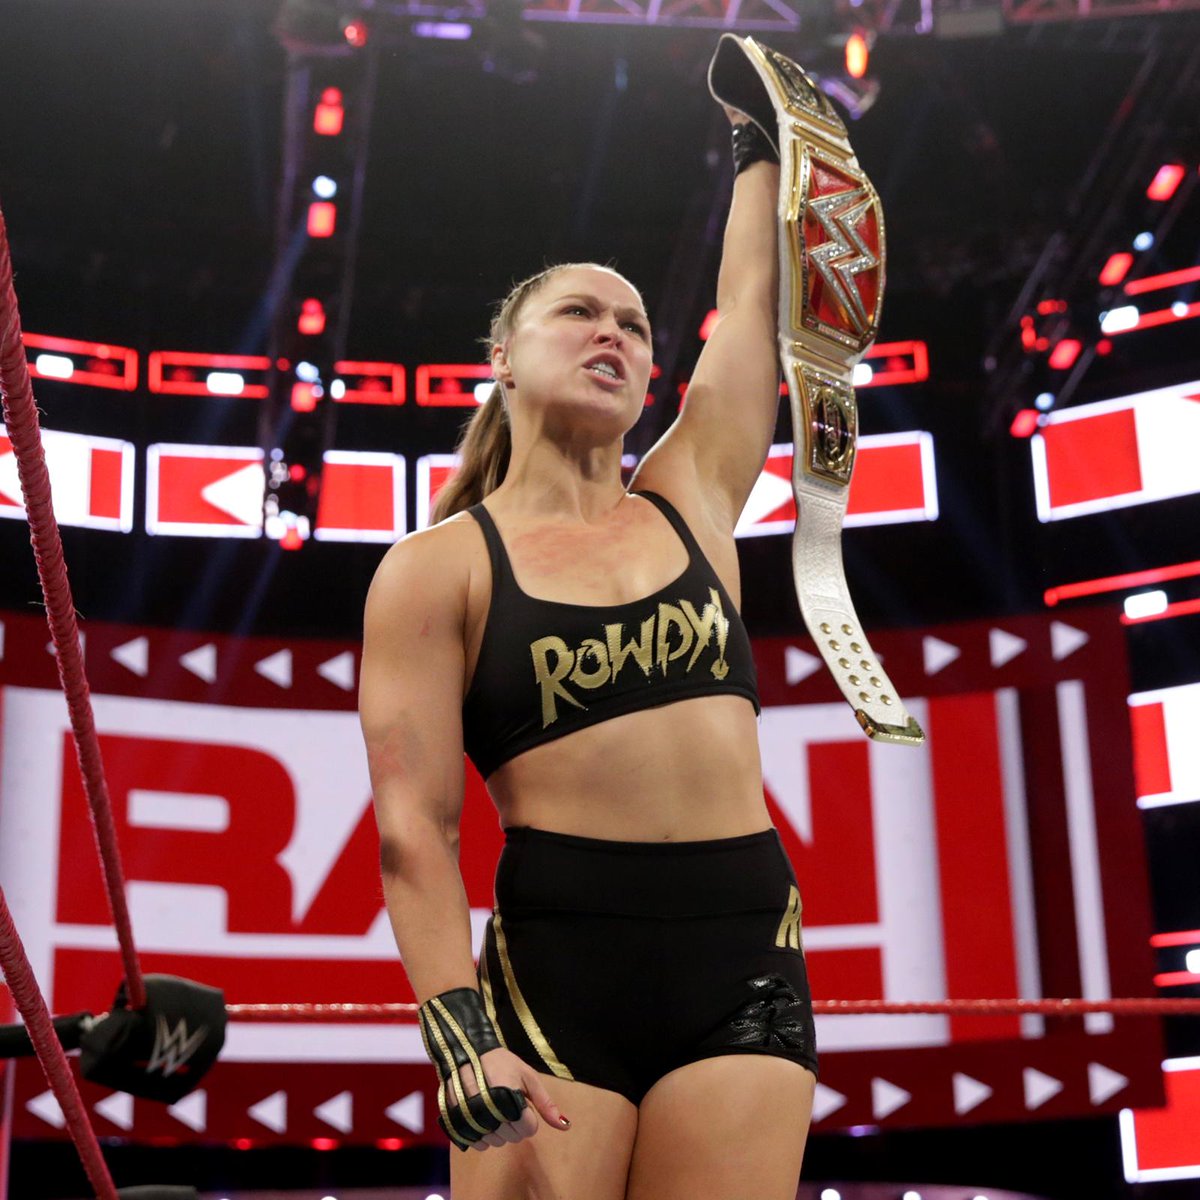 ロンダ ラウジー Ronda Rousey 世界の 強可愛クイーン ロンダ様の神々しいワキ 第二弾 ワキフェチキングダム